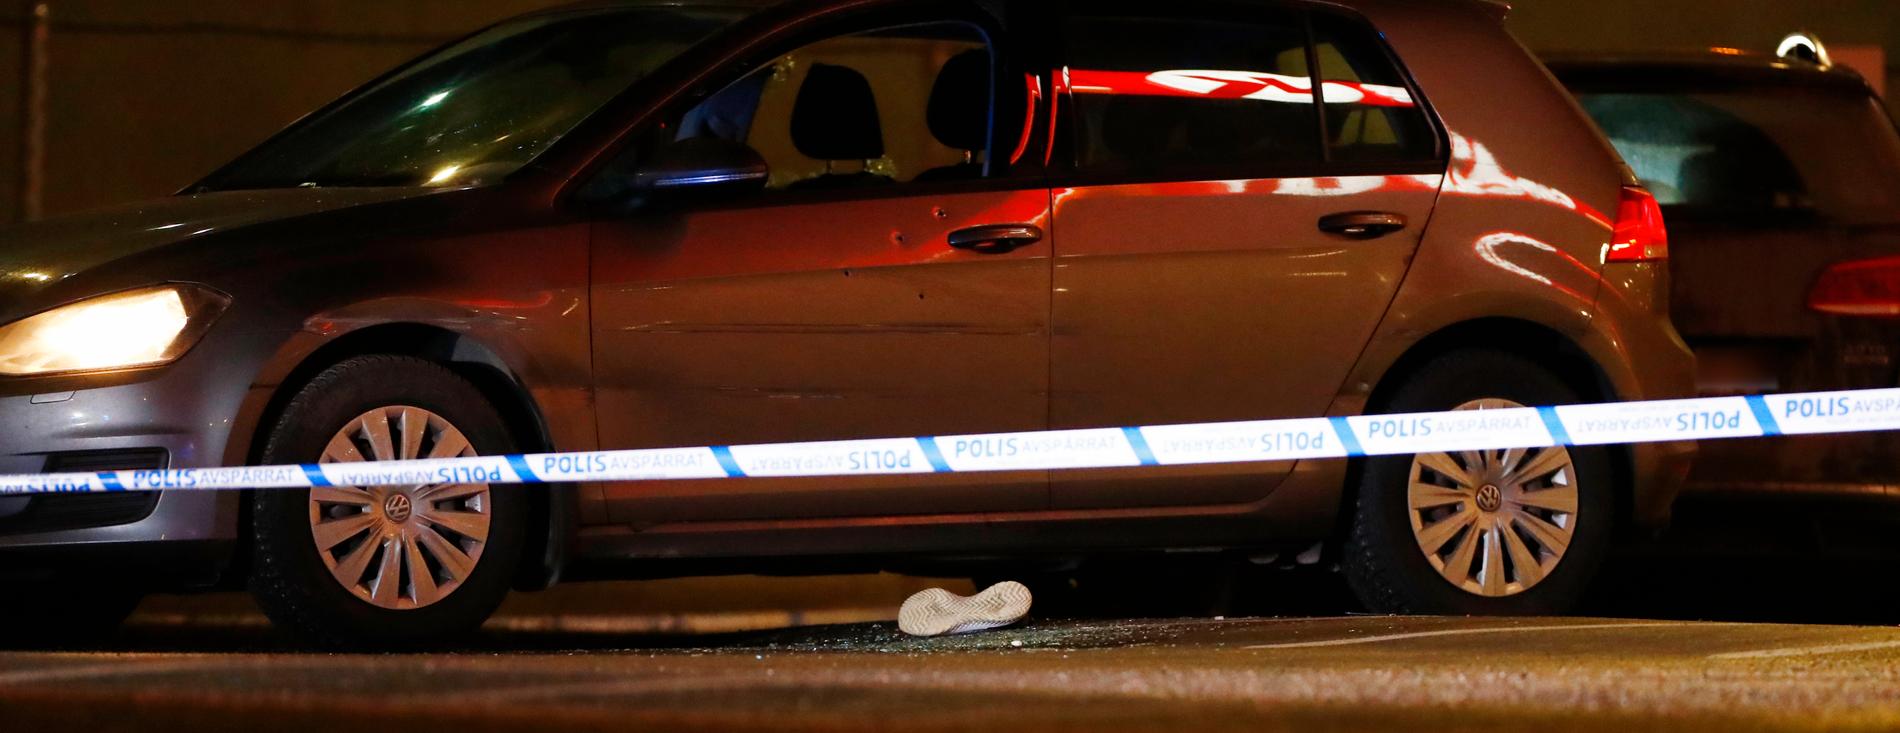 En man och en kvinna, hittades skottskadade i en bil i Kungens kurva i Stockholm. Mannen har nu avlidit. Kvinnan vårdas på sjukhus.